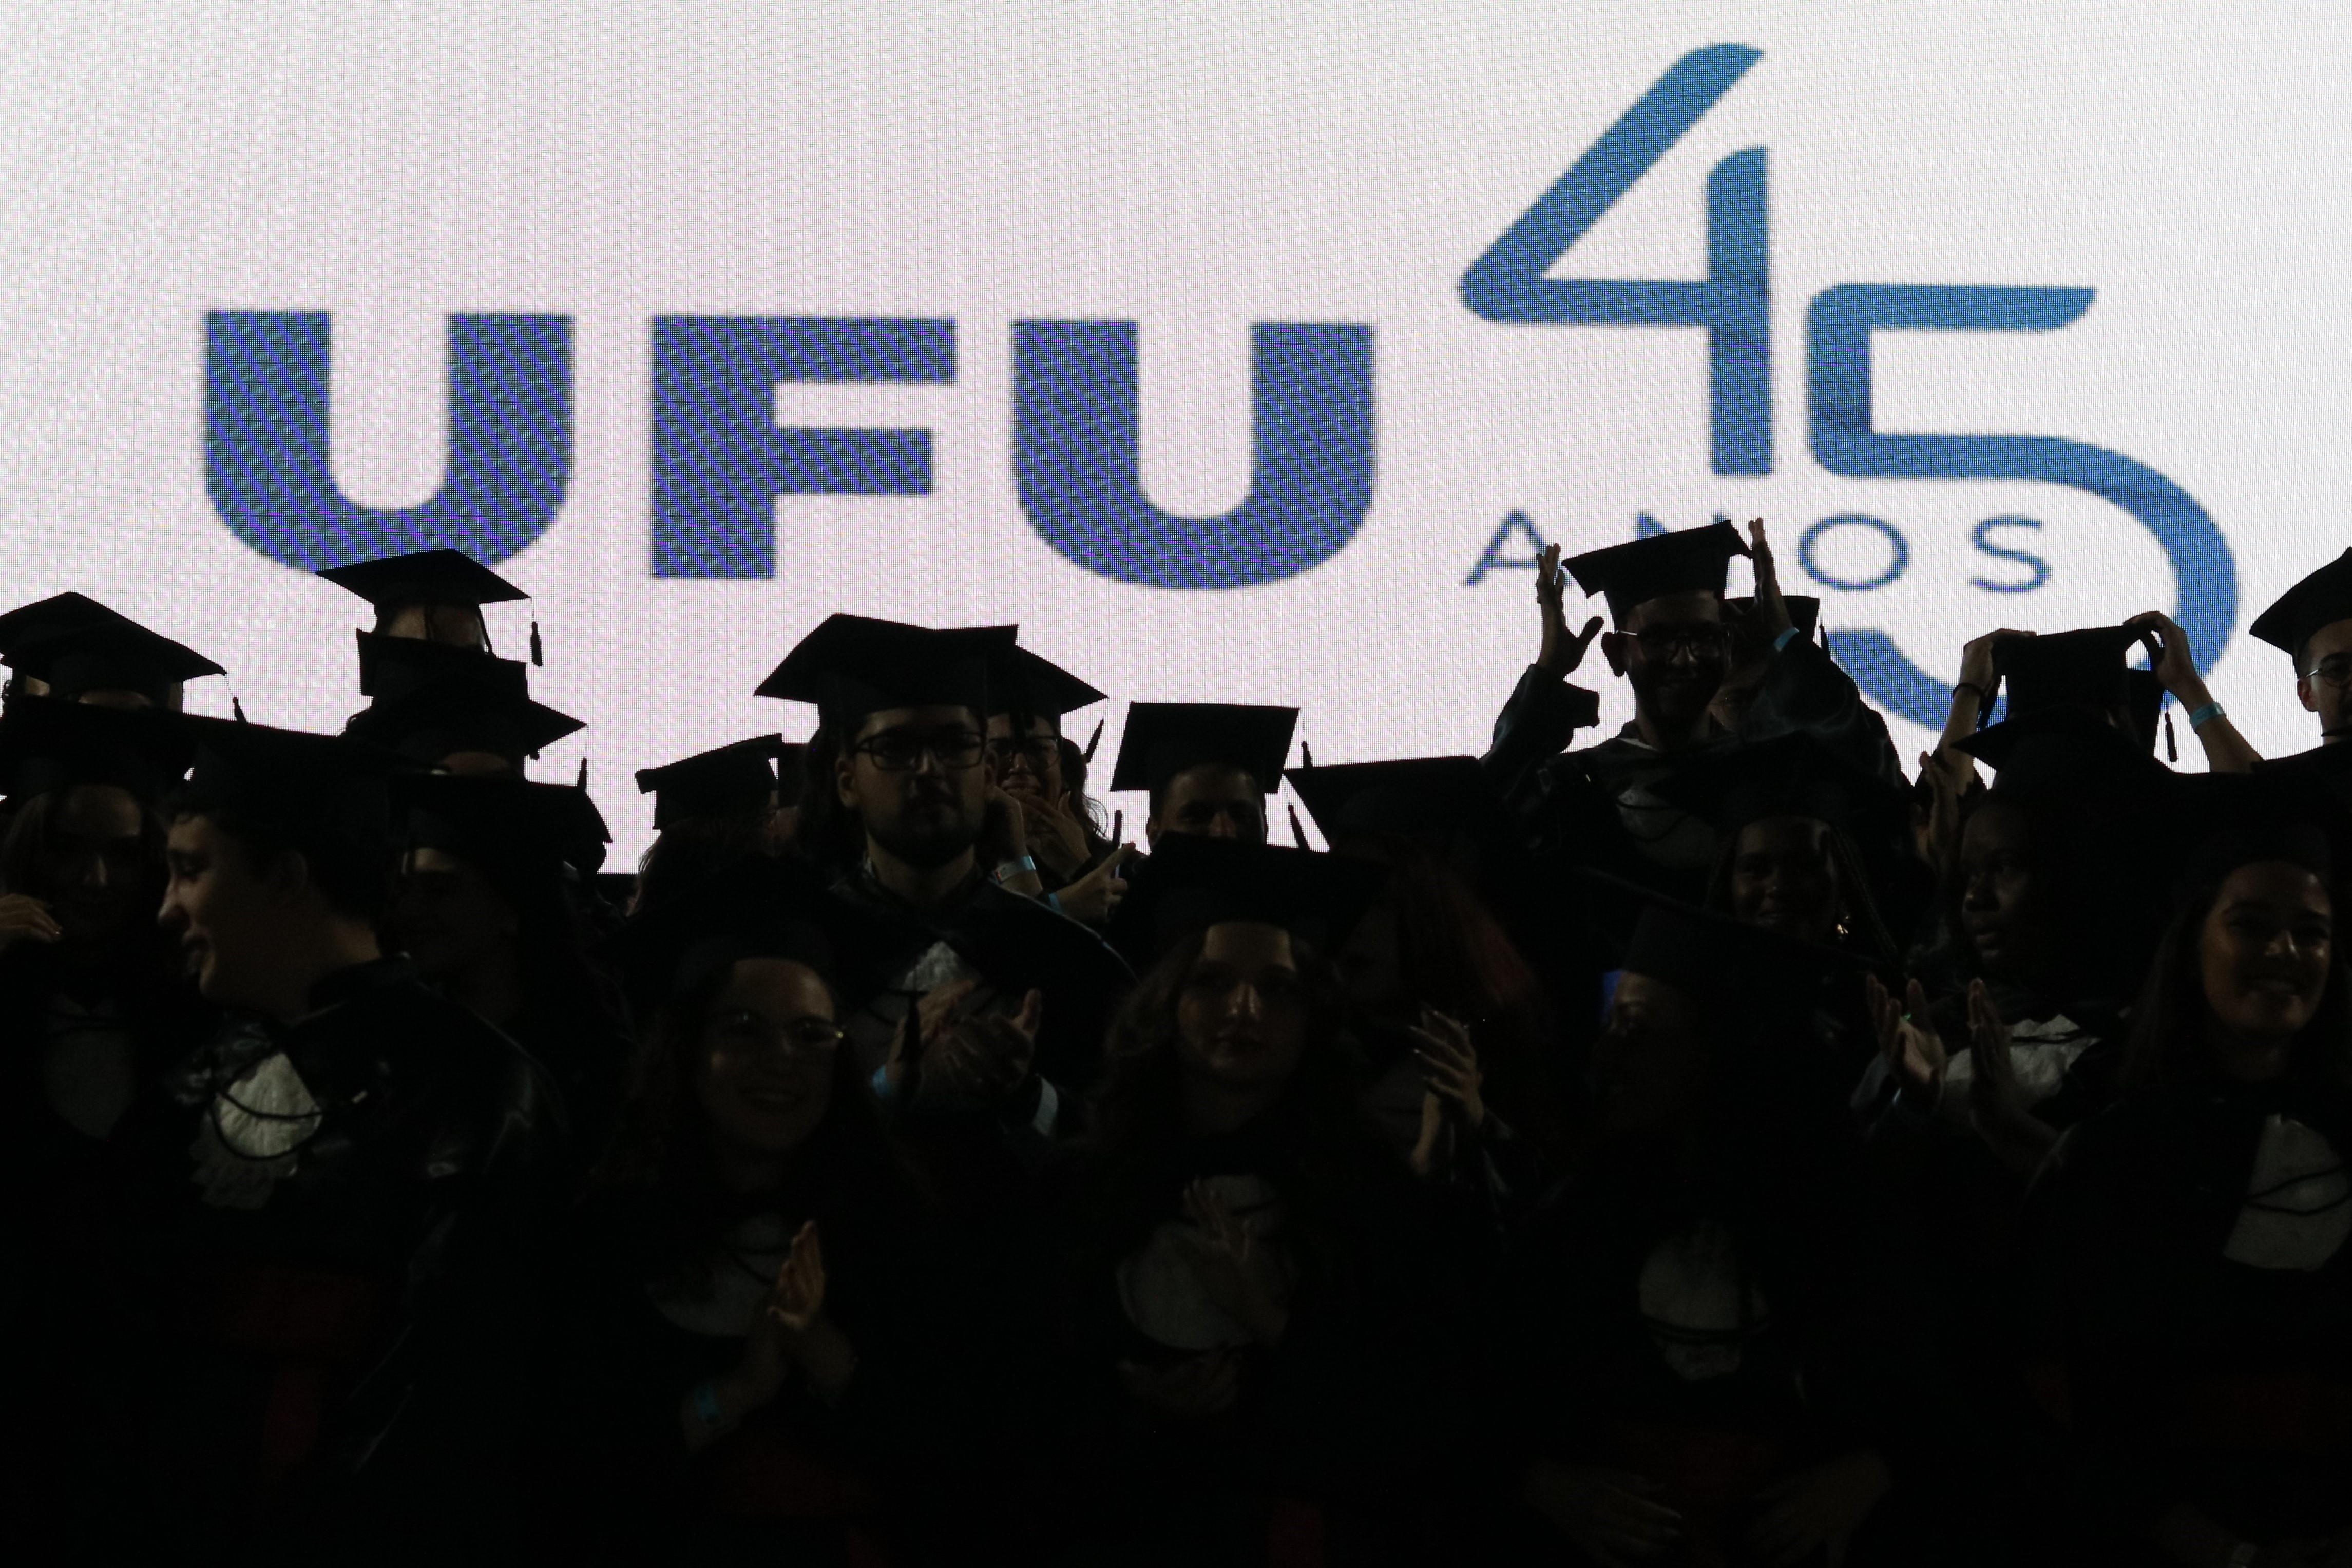 Fundo com logo da UFU 45 anos e mais a frente estão os formandos, formando uma sombra no primeiro plano da imagem.